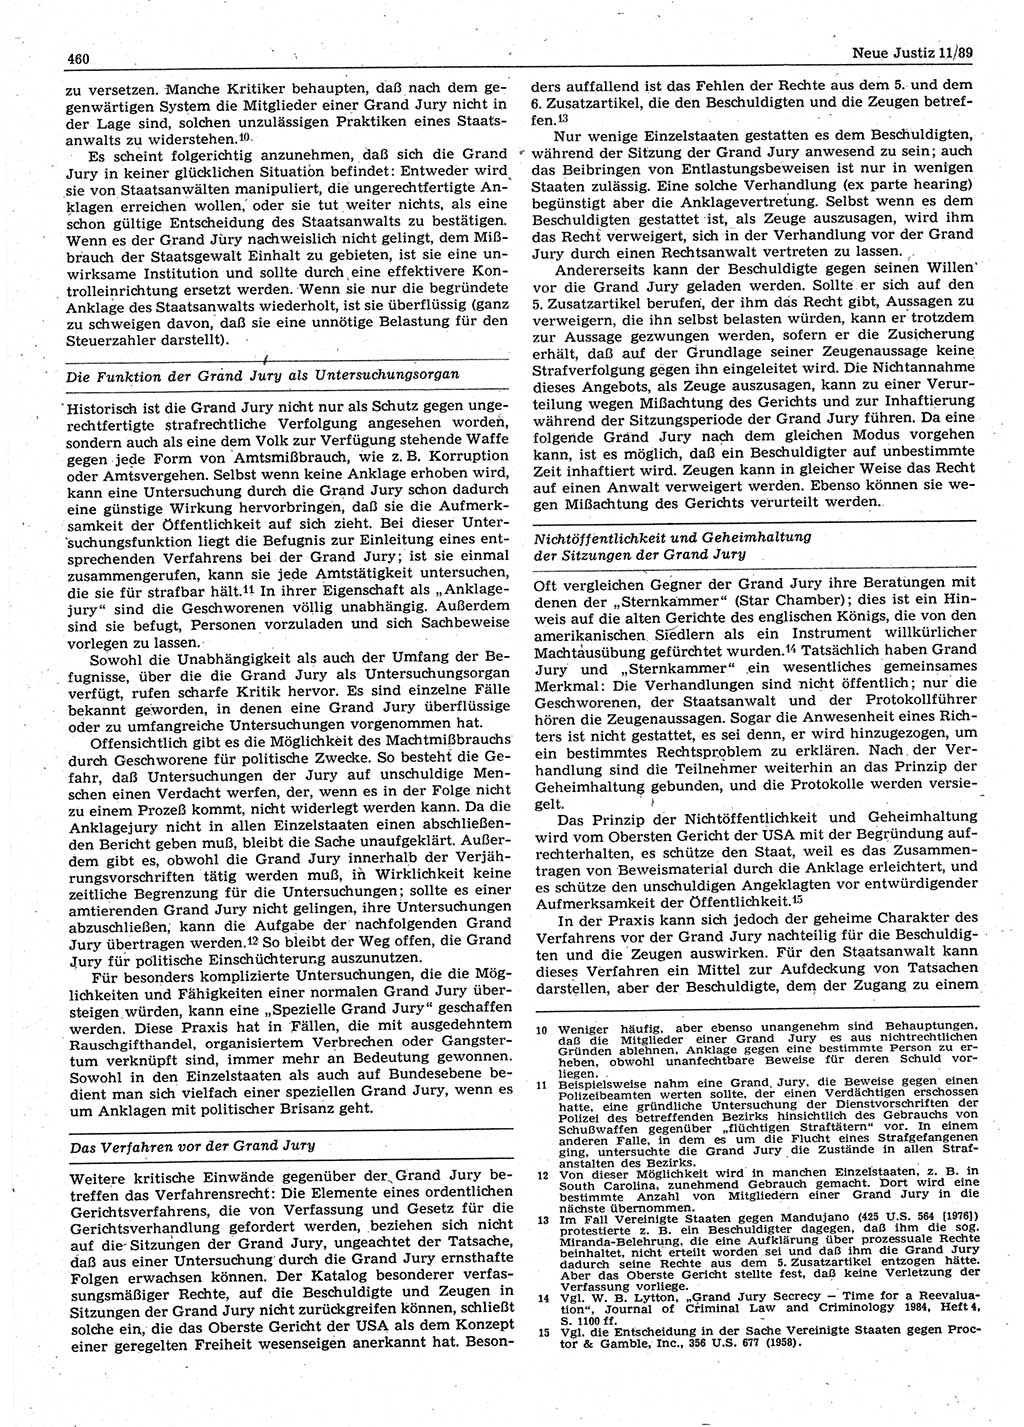 Neue Justiz (NJ), Zeitschrift für sozialistisches Recht und Gesetzlichkeit [Deutsche Demokratische Republik (DDR)], 43. Jahrgang 1989, Seite 460 (NJ DDR 1989, S. 460)